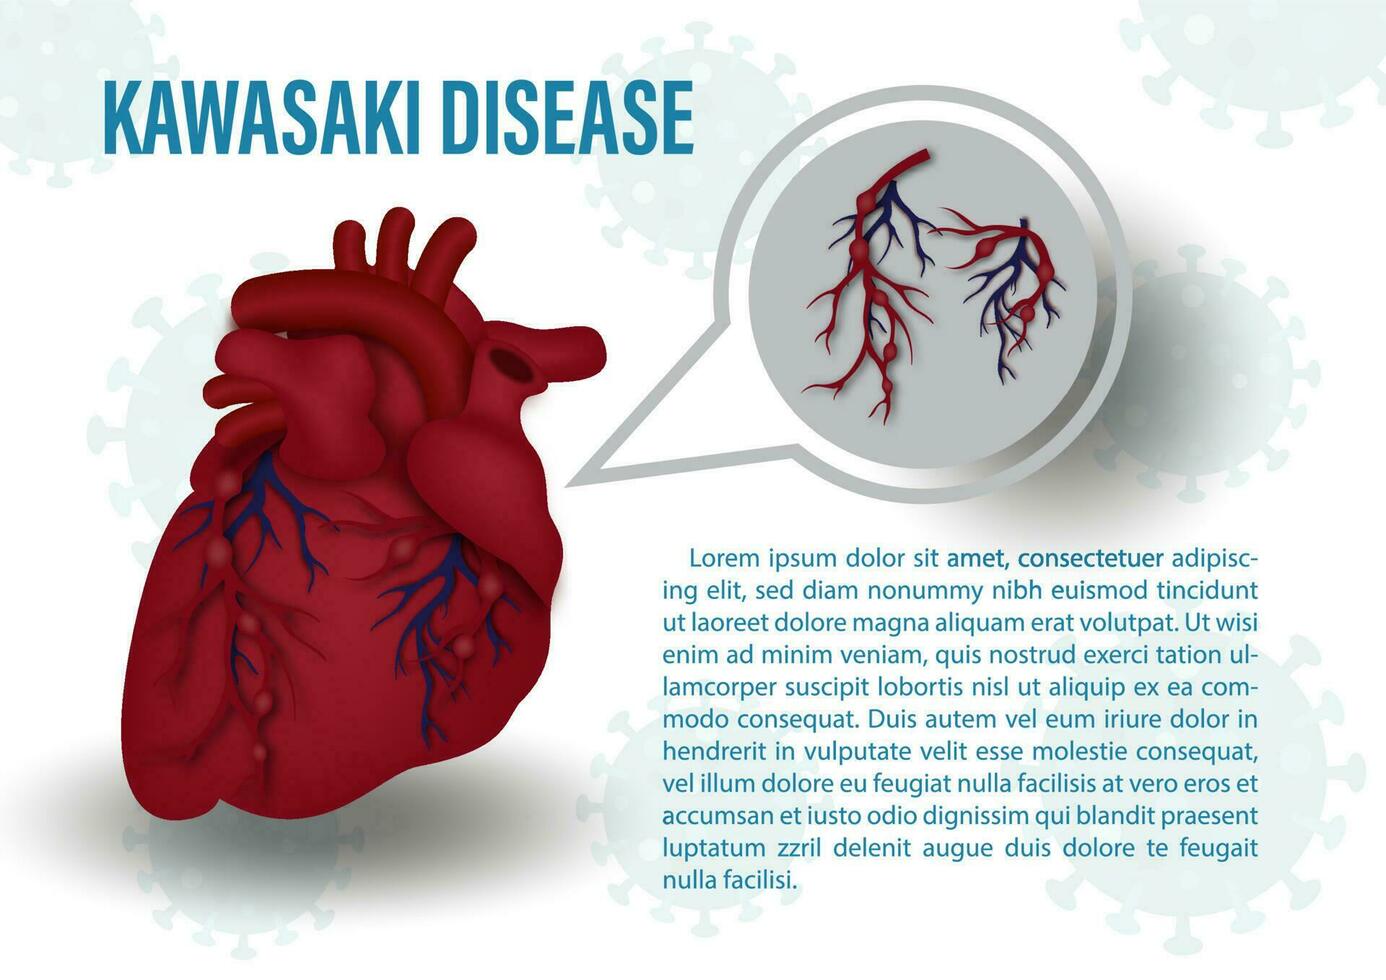 närbild mänsklig hjärta med de kawasaki symptom på röd blod kärl, de namn och exempel texter på virus symboler och vit bakgrund. medicinska affisch av de kawasaki sjukdom i vektor design.